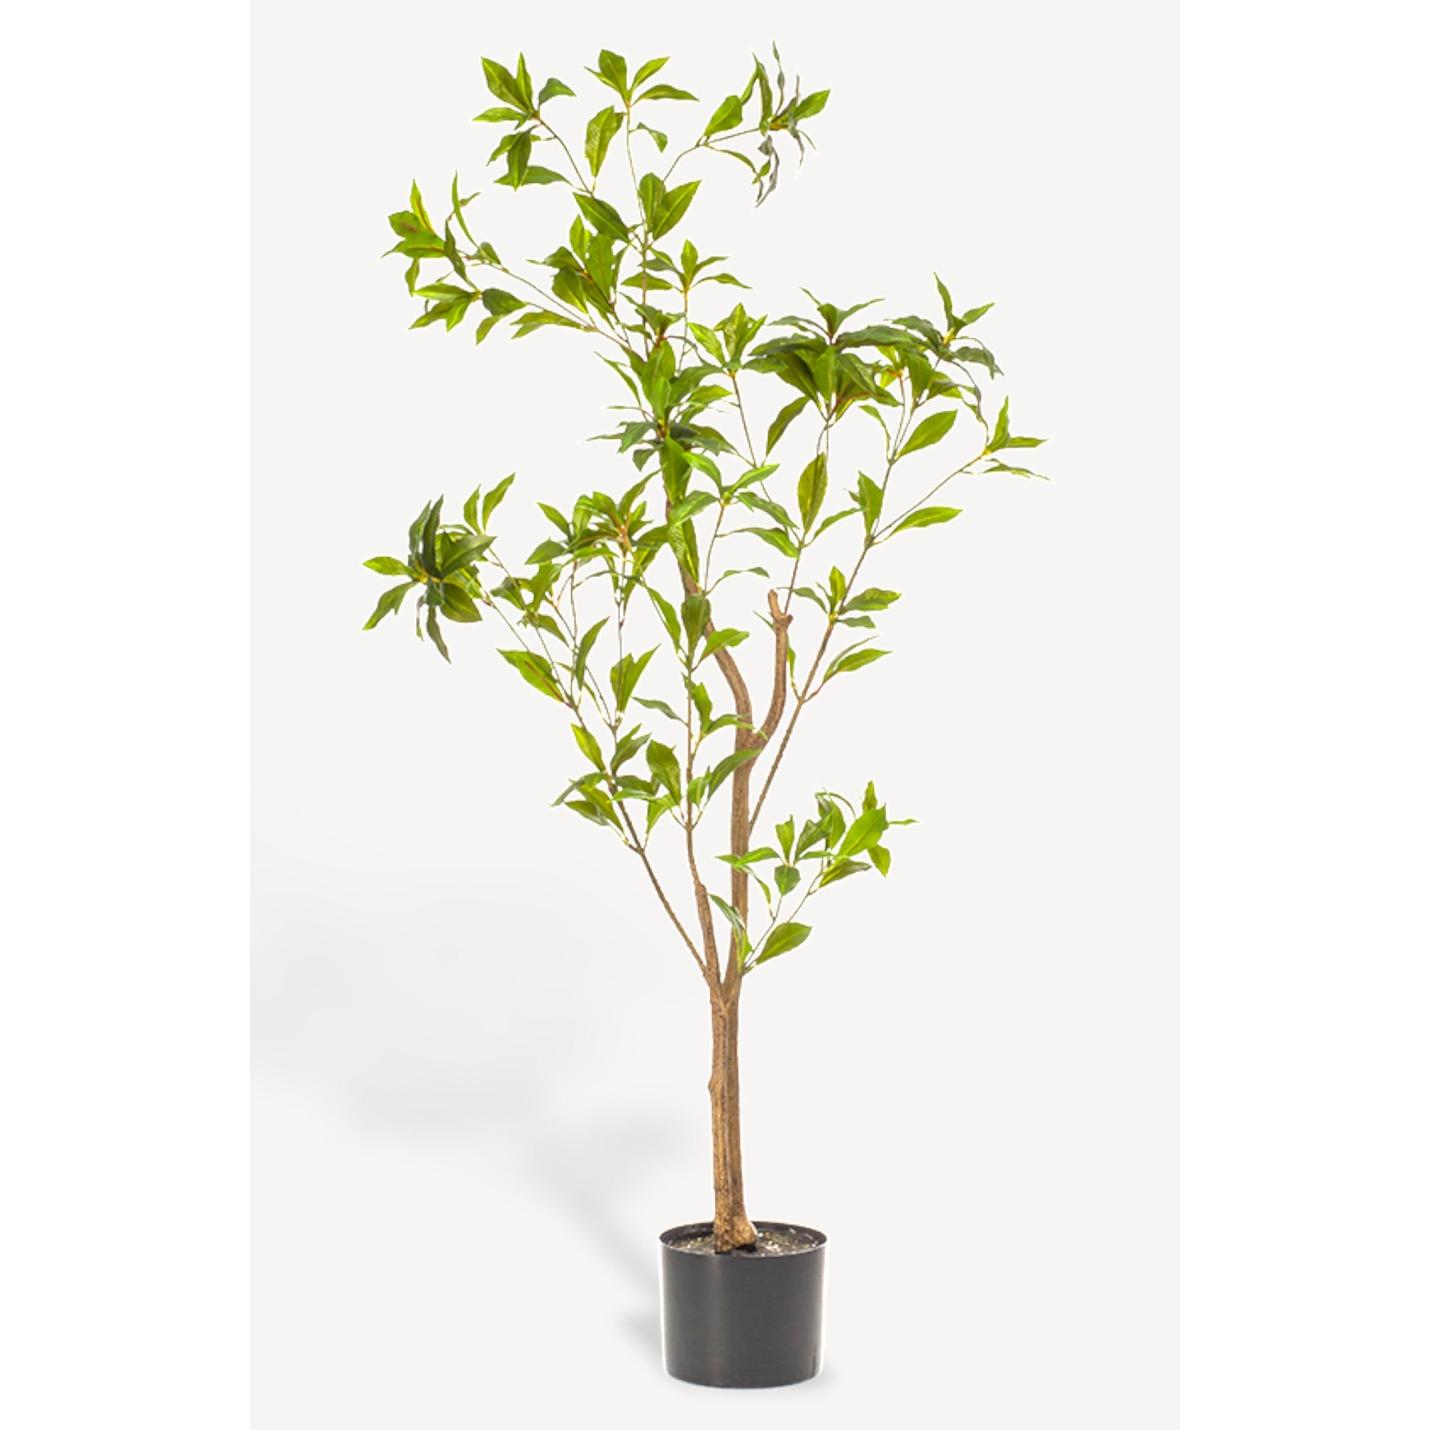 Tea Leaf Kunstplant - 120 cm - Collectie van hoogwaardige kunstplanten en zijden bloemboeketten, inclusief kunstbloemen en nepplanten voor interieurdecoratie, perfect voor een onderhoudsvrij, groen thuis of kantoor.